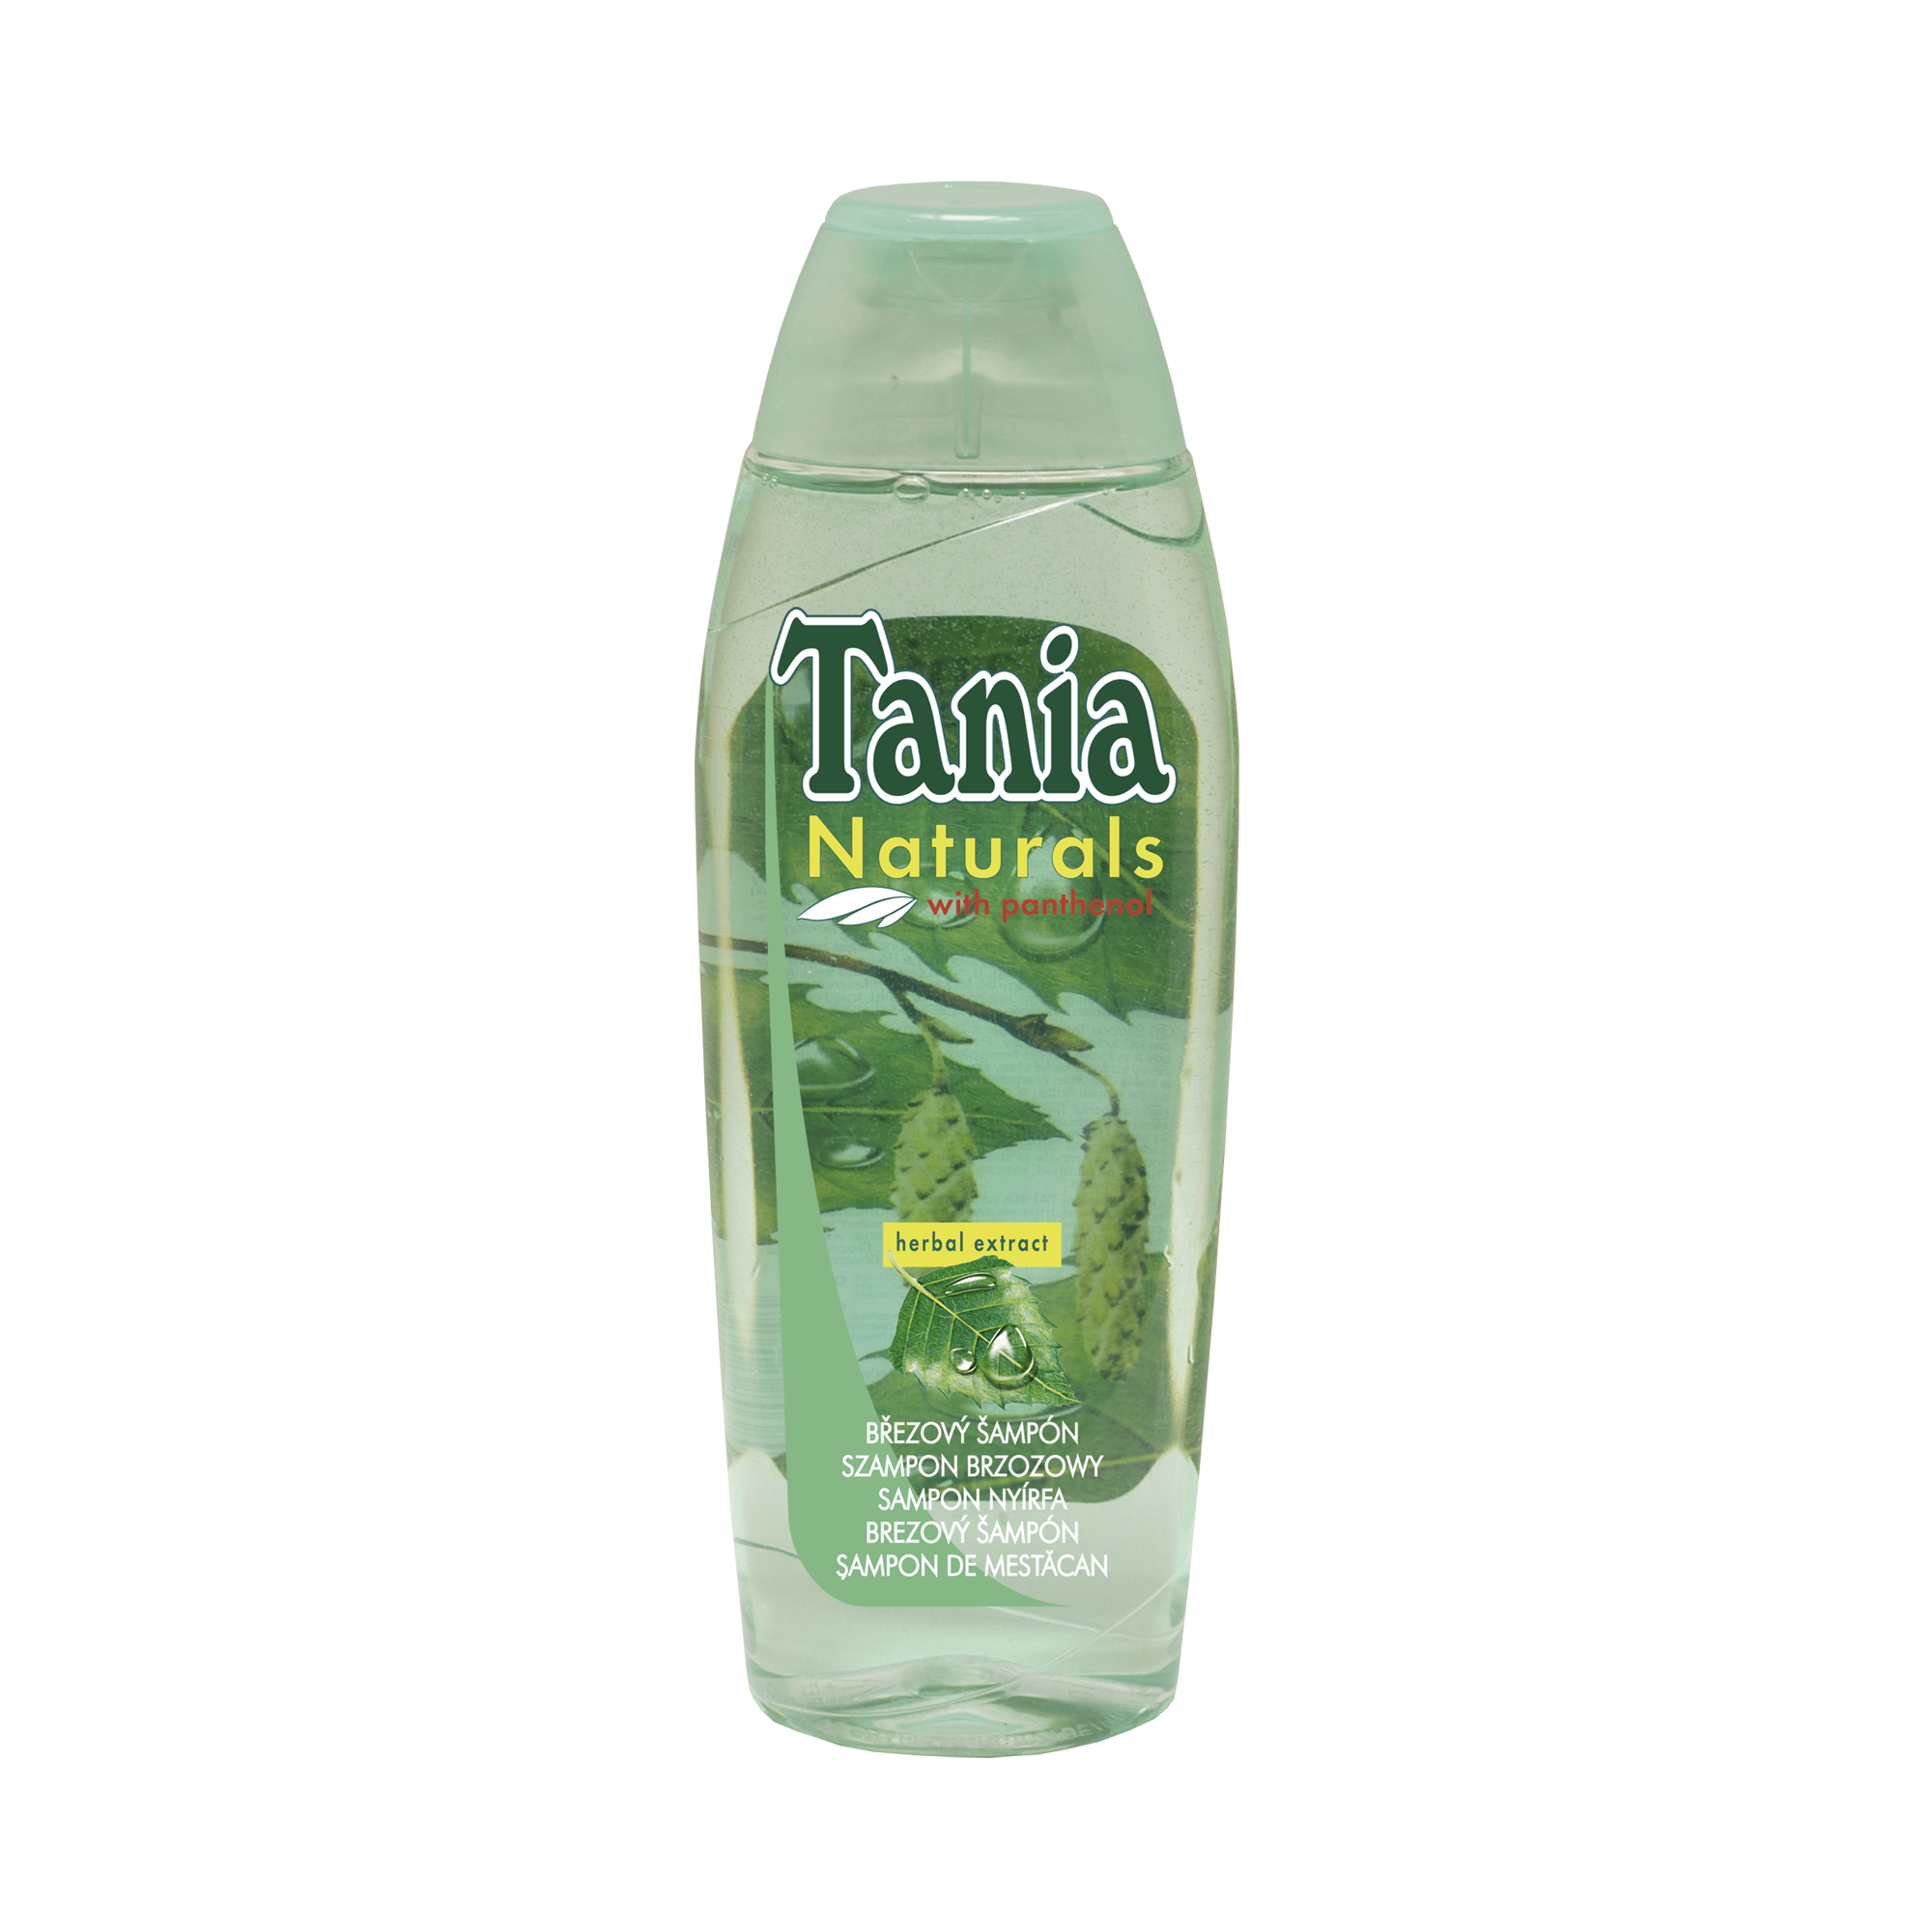 Şamponul Tania naturals de mesteacăn